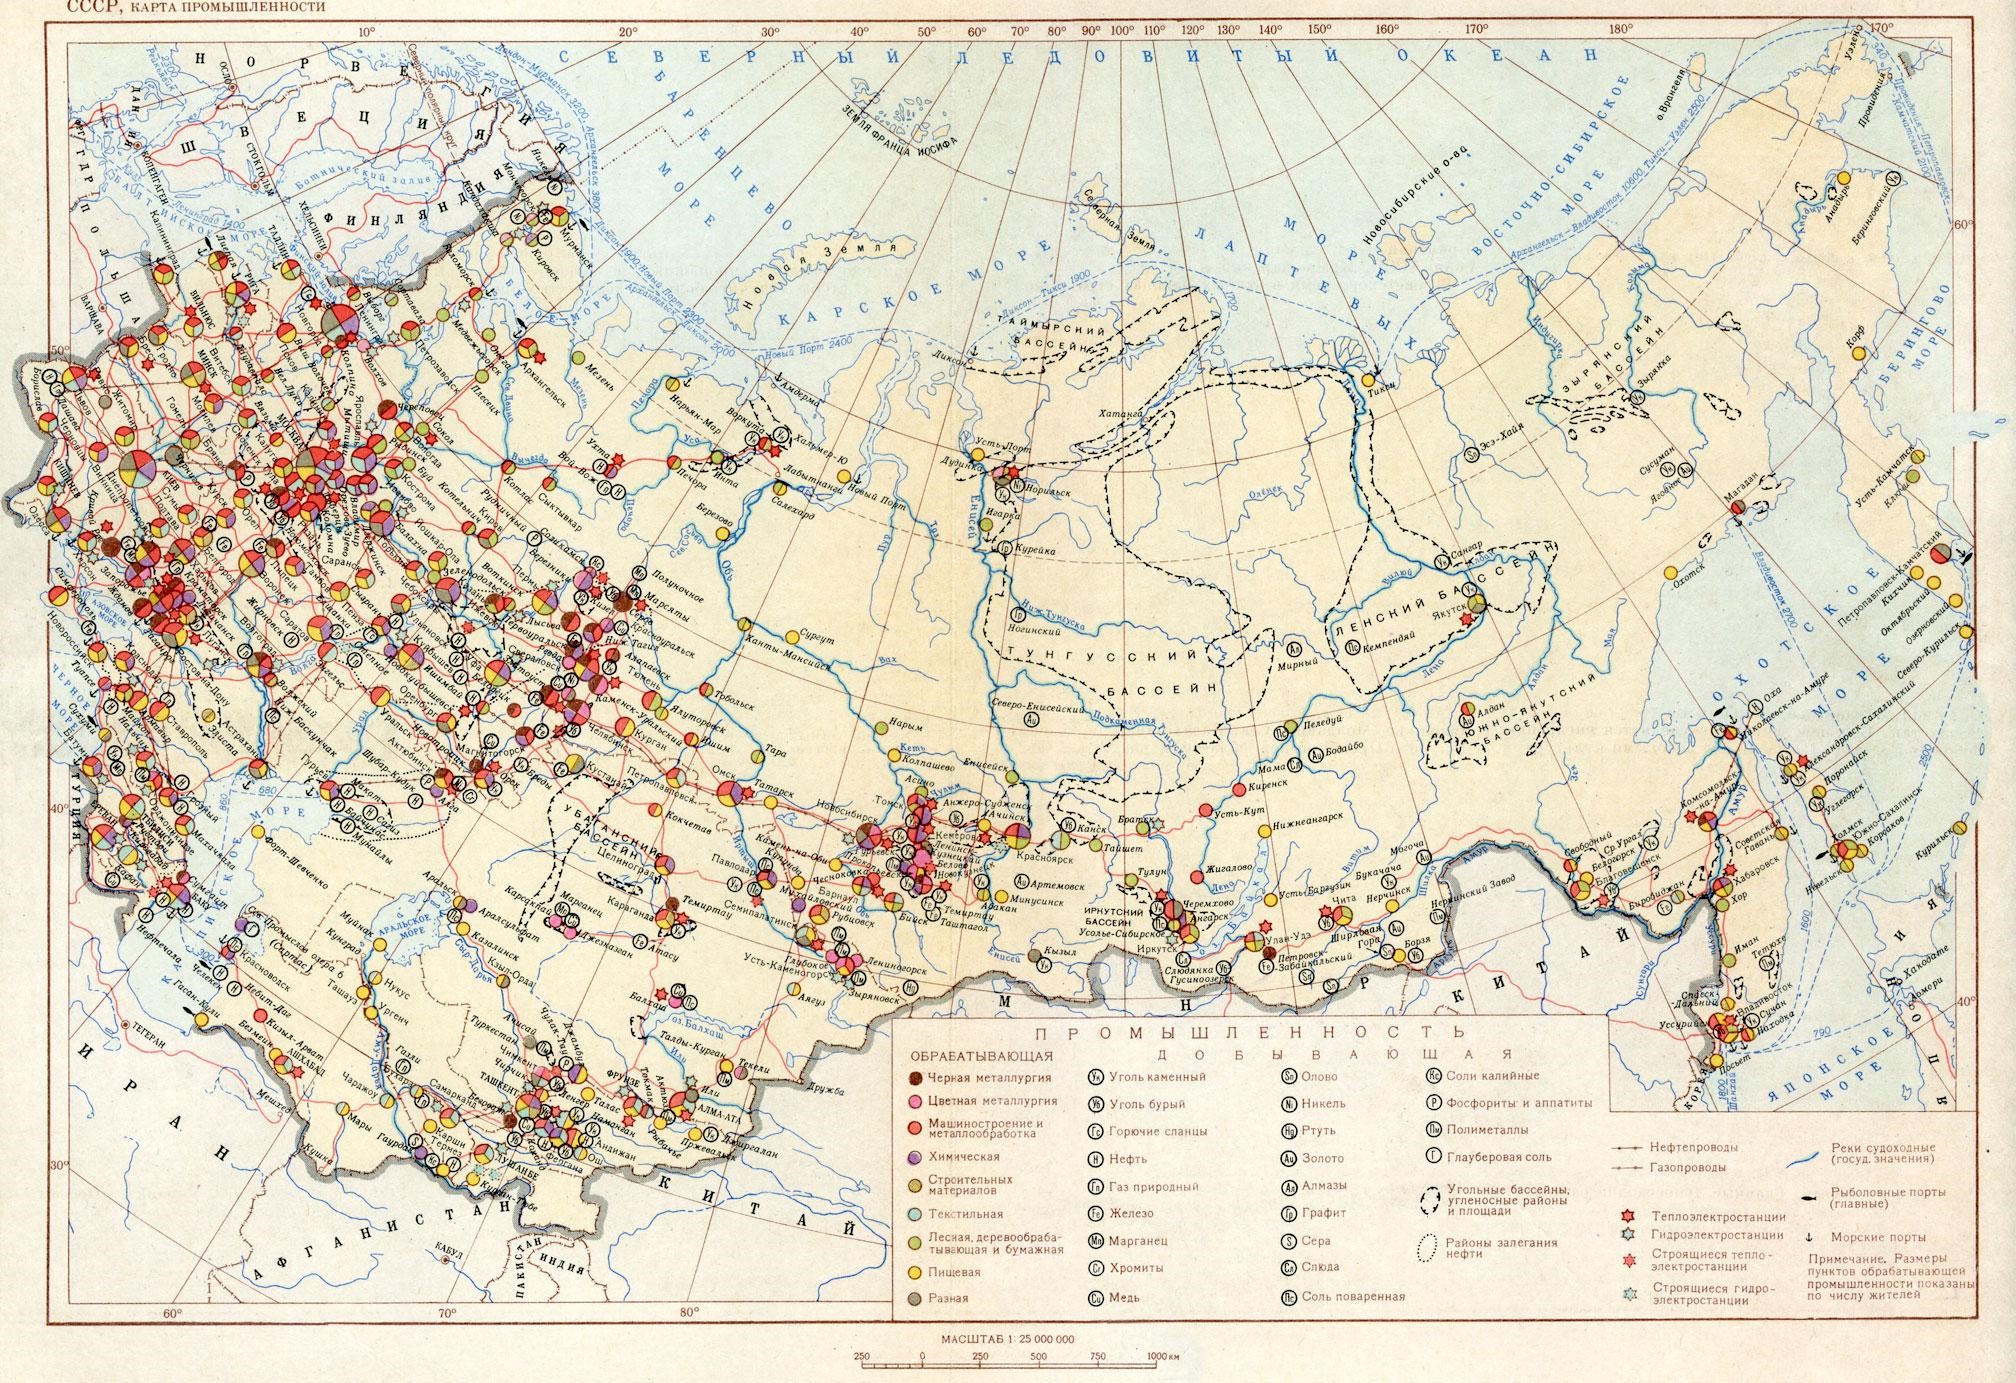 Рис. 10. СССР, карта промышленности